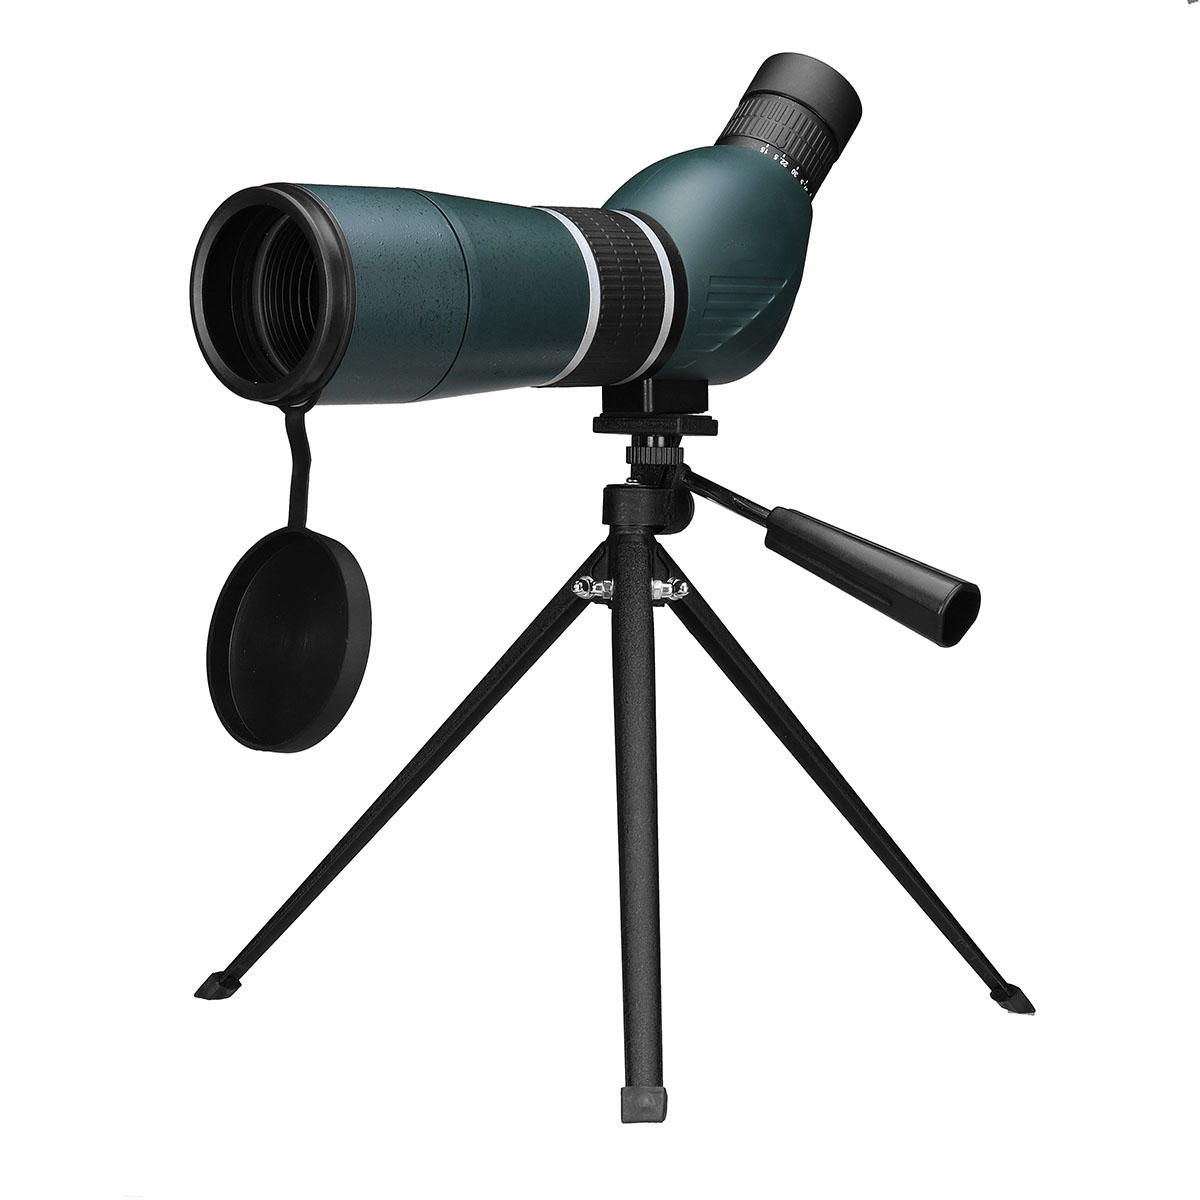 15-45x60 Zoom buiten Monoculair HD Optic Nachtzicht Telescoop Wildlife Brid Camping Reizen bekijken